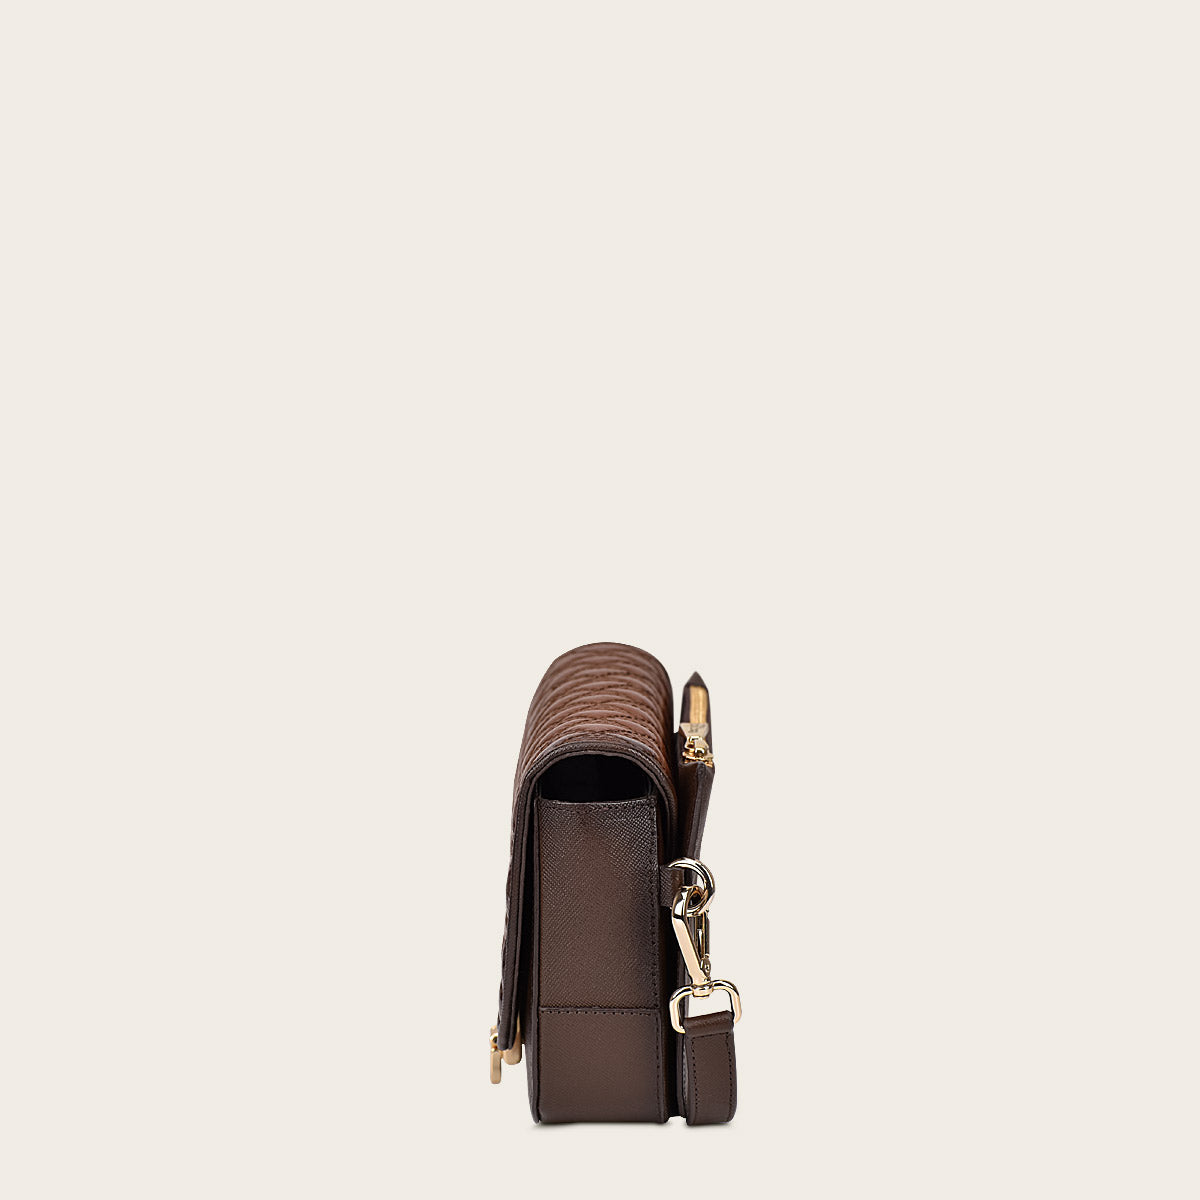 Cinturón de piel color café y bolso bandolera.